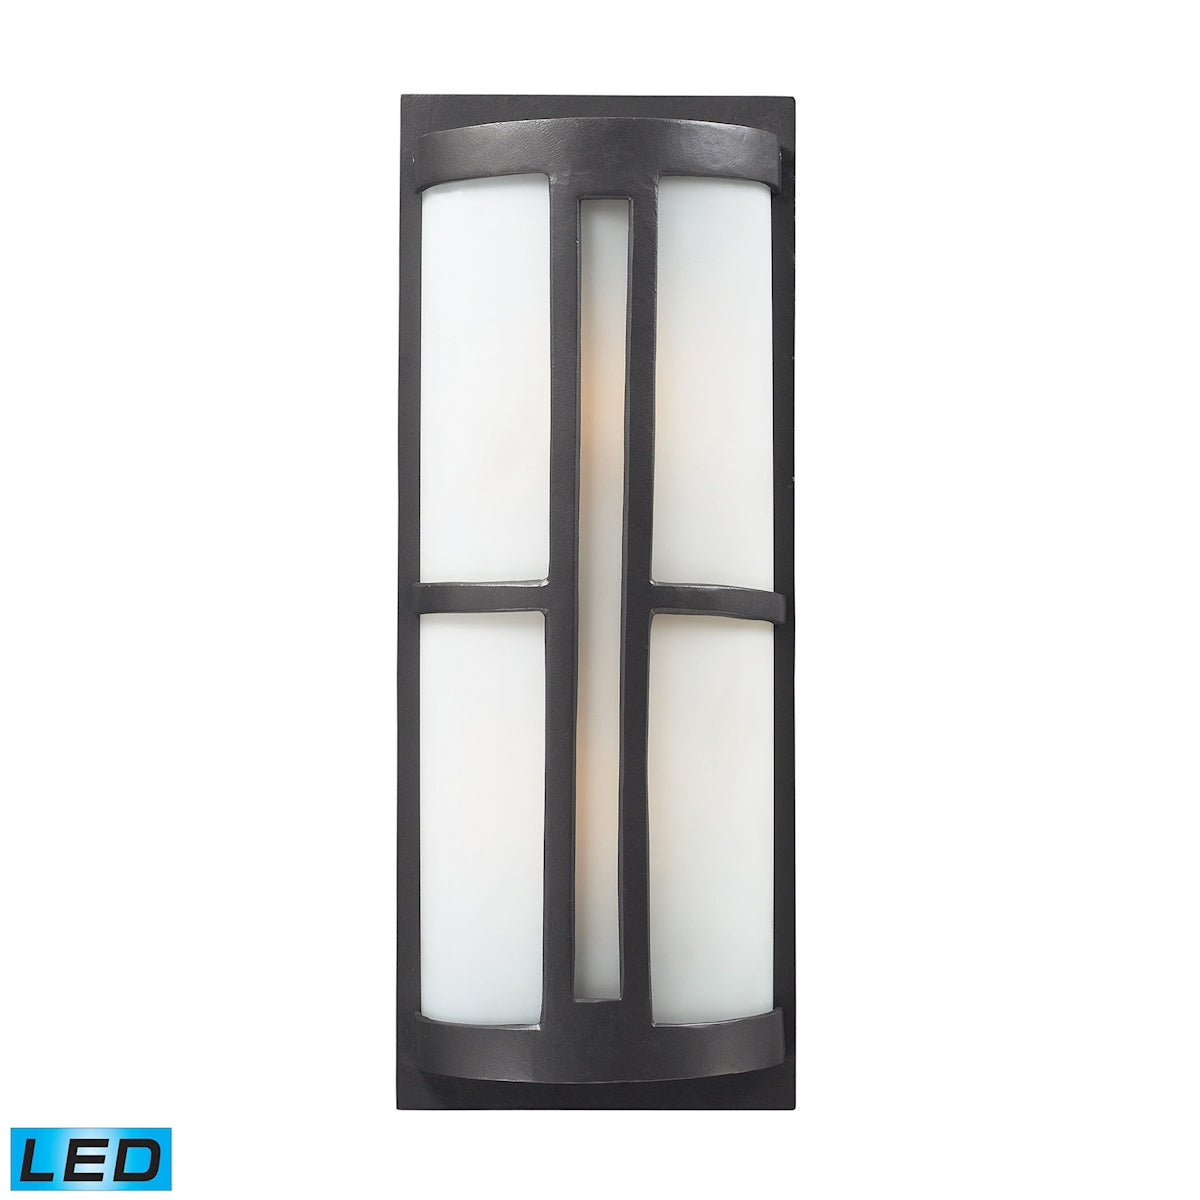 ELK Lighting 42396/2-LED Trevot 2-Light Outdoor Sconce in Graphite - Includes LED Bulbs